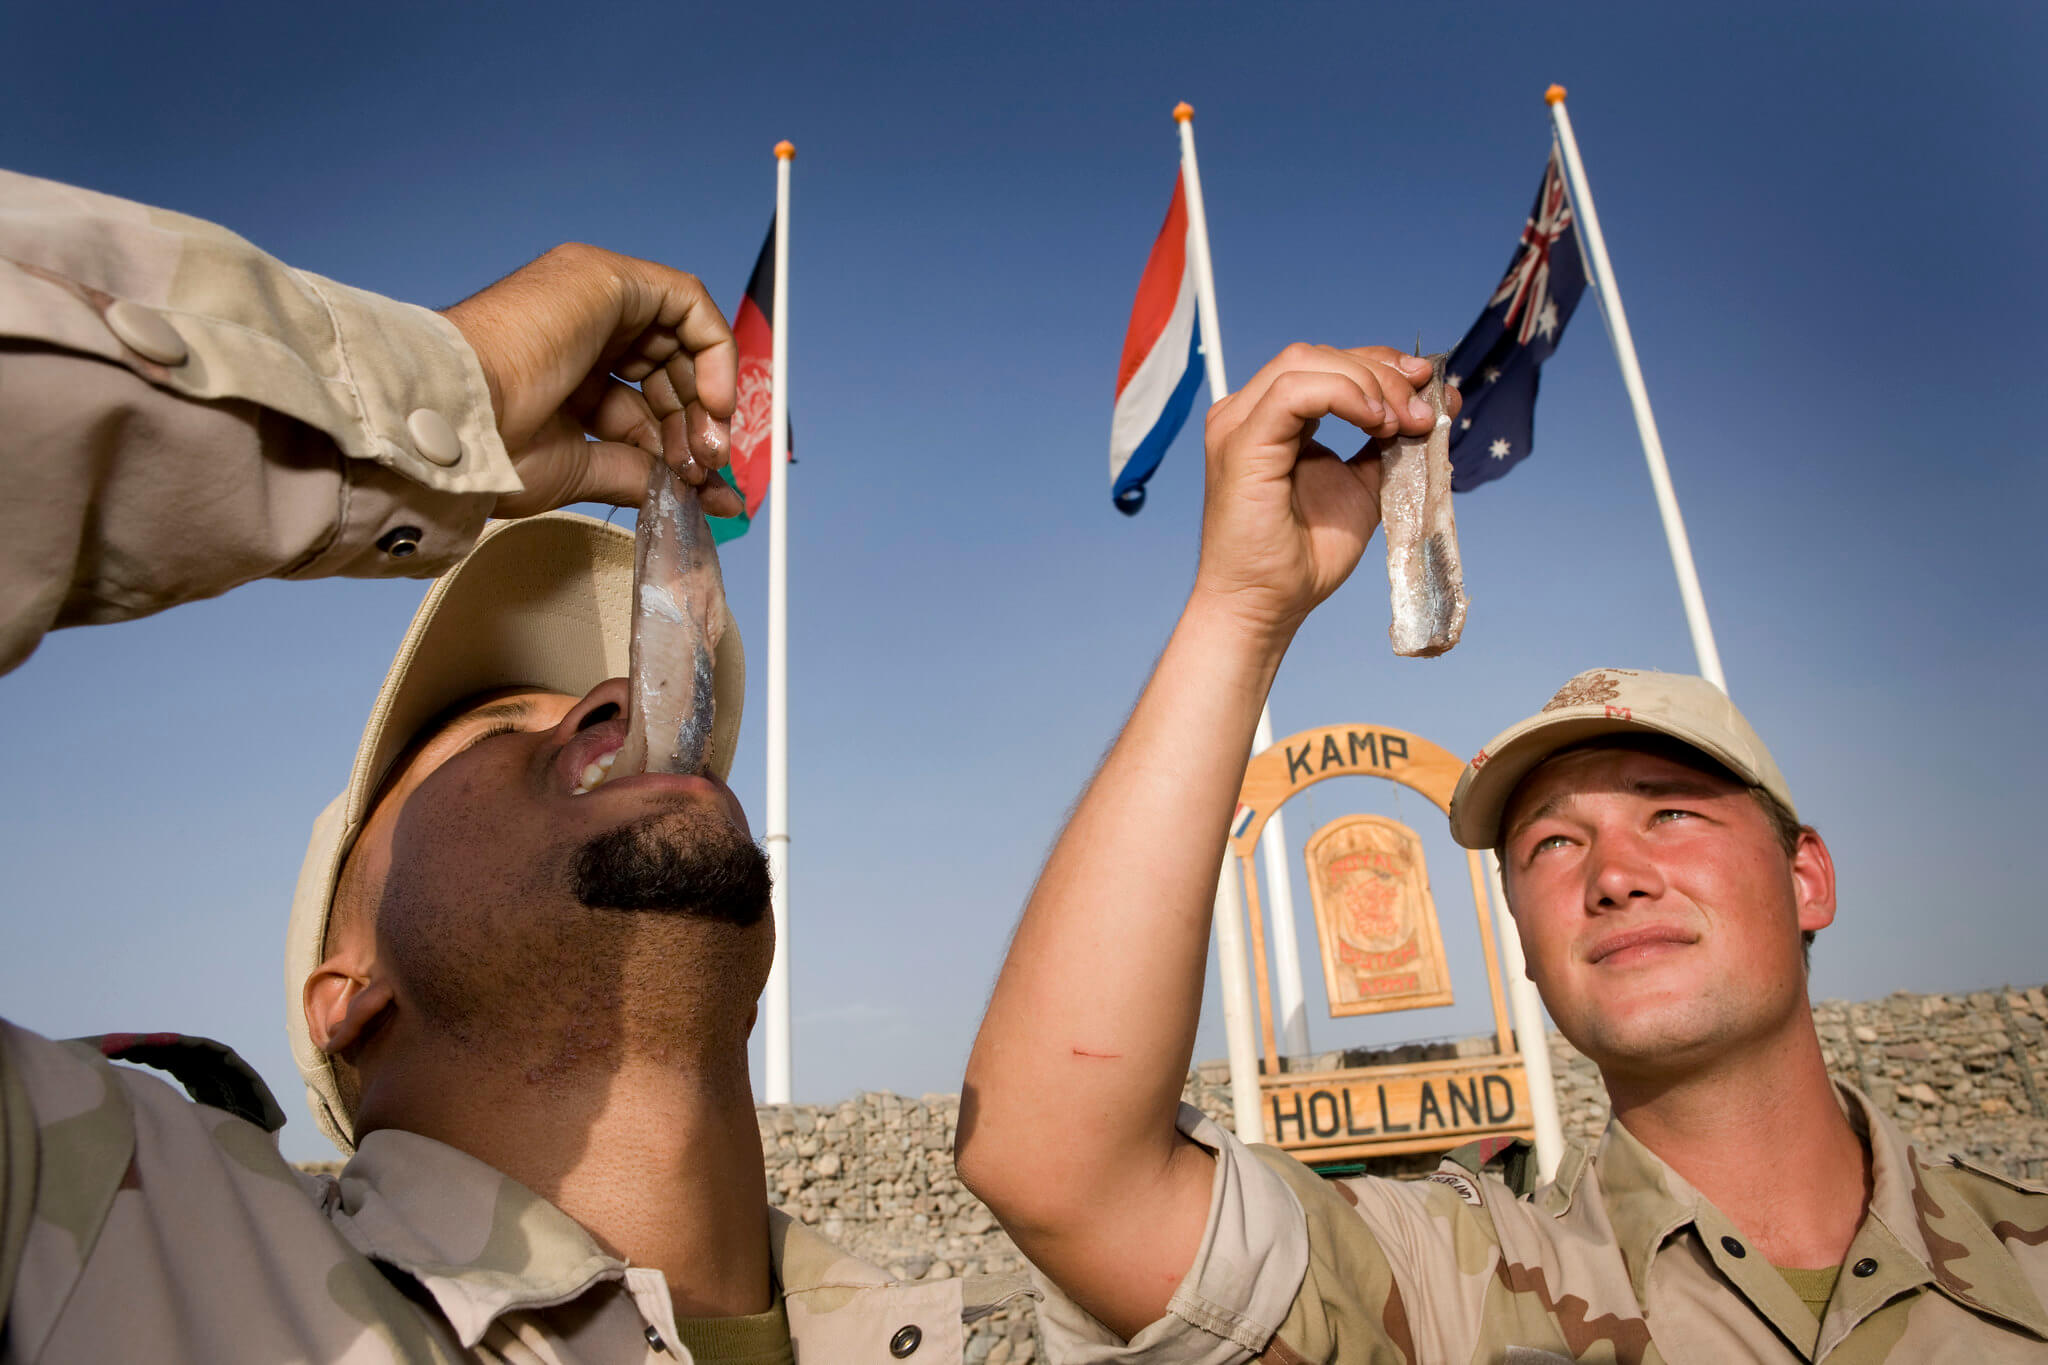 Kamminga - Speciaal voor de Nederlandse militairen in Afghanistan in het kader van Task Force Uruzgan werd er in 2008 een vaatje nieuwe haring ingevlogen. ResoluteSupportMedia - Flickr